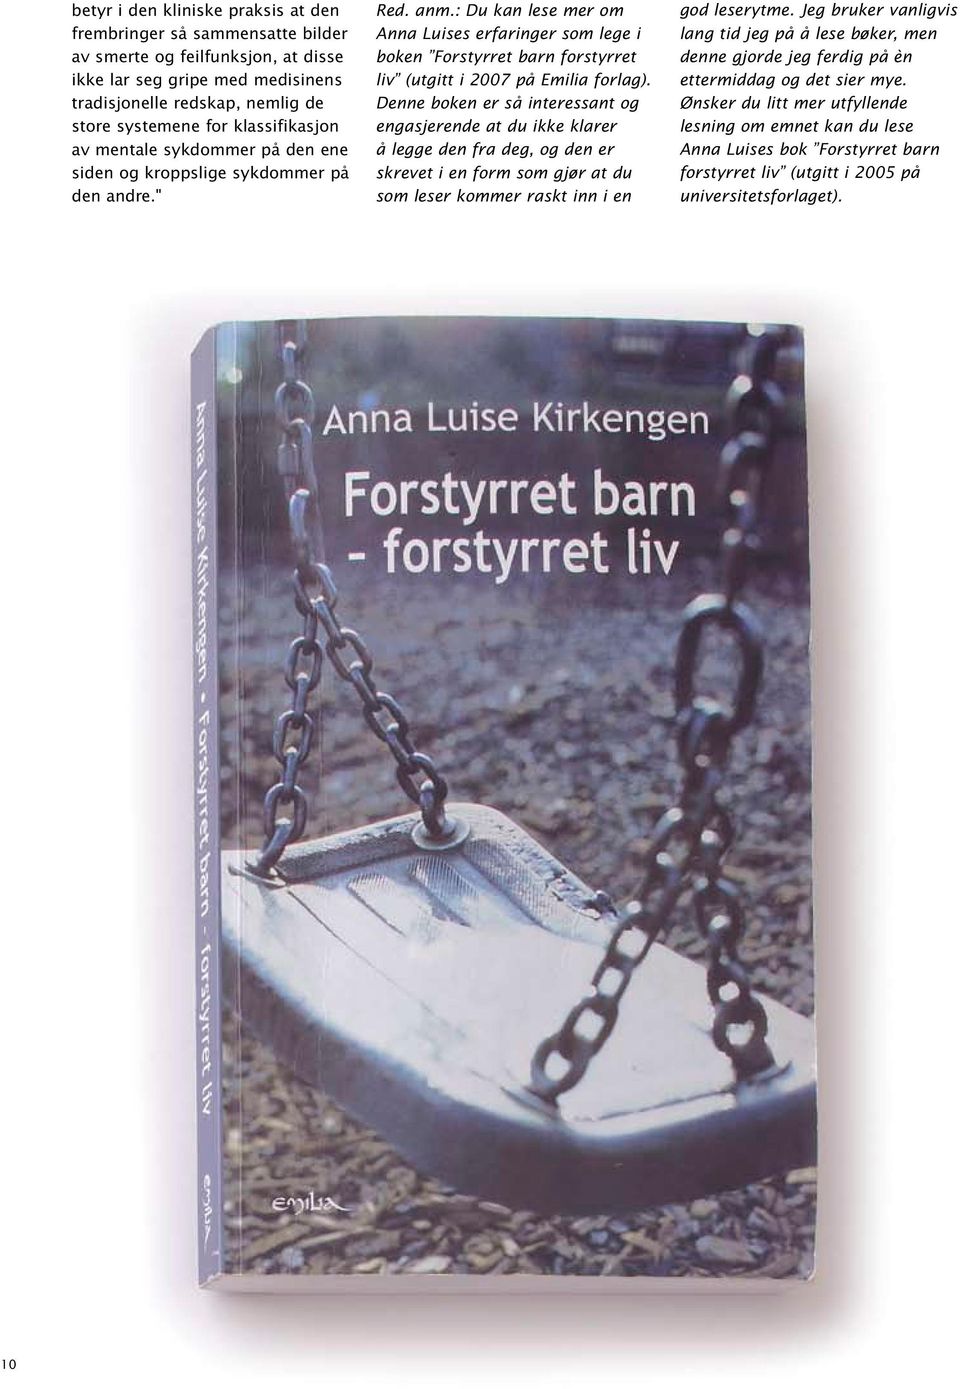 : Du kan lese mer om Anna Luises erfaringer som lege i boken Forstyrret barn forstyrret liv (utgitt i 2007 på Emilia forlag).